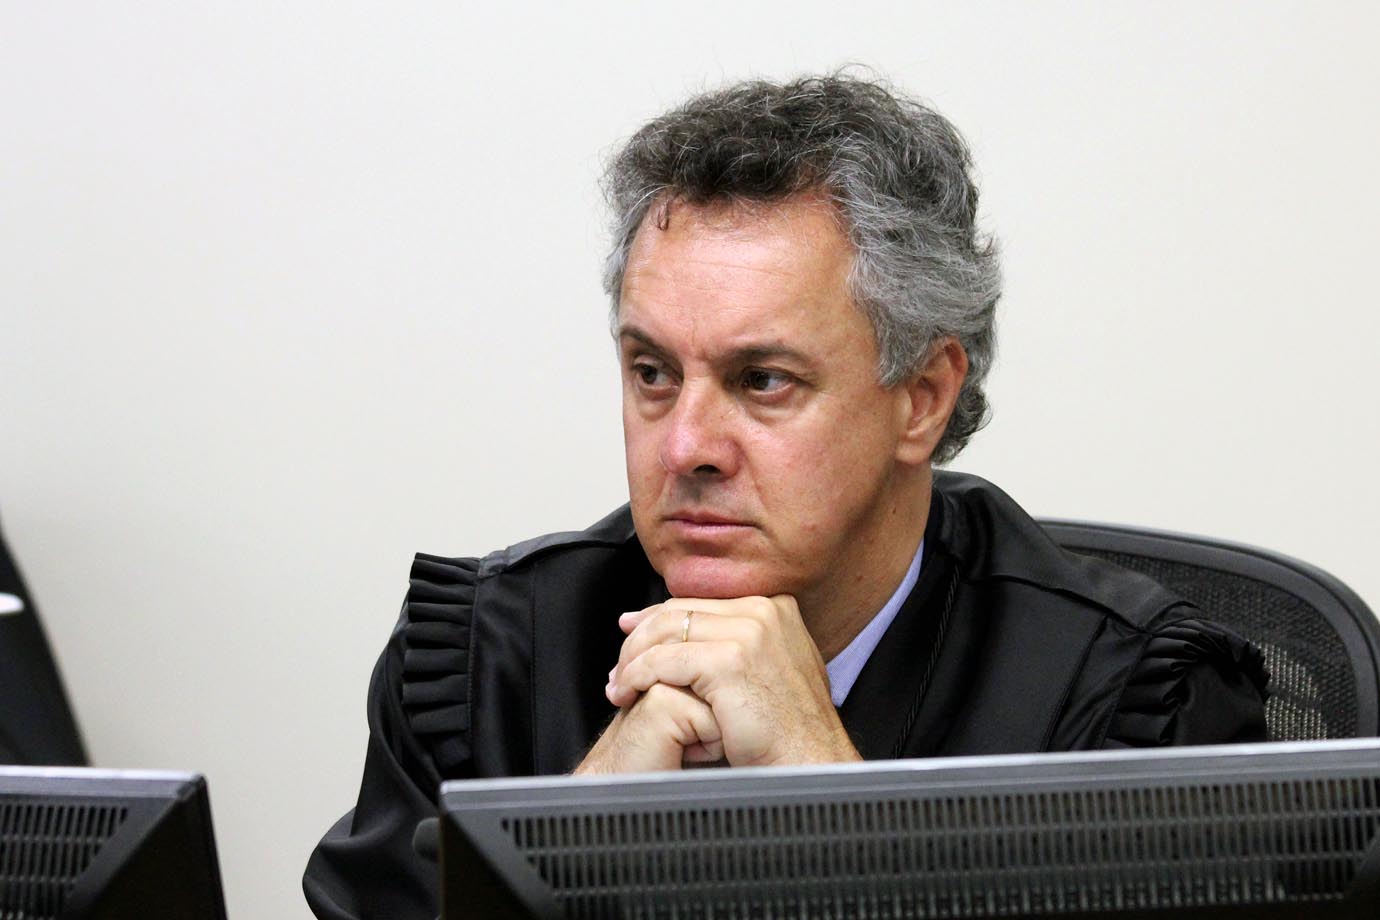 Judge João Pedro Gebran Neto